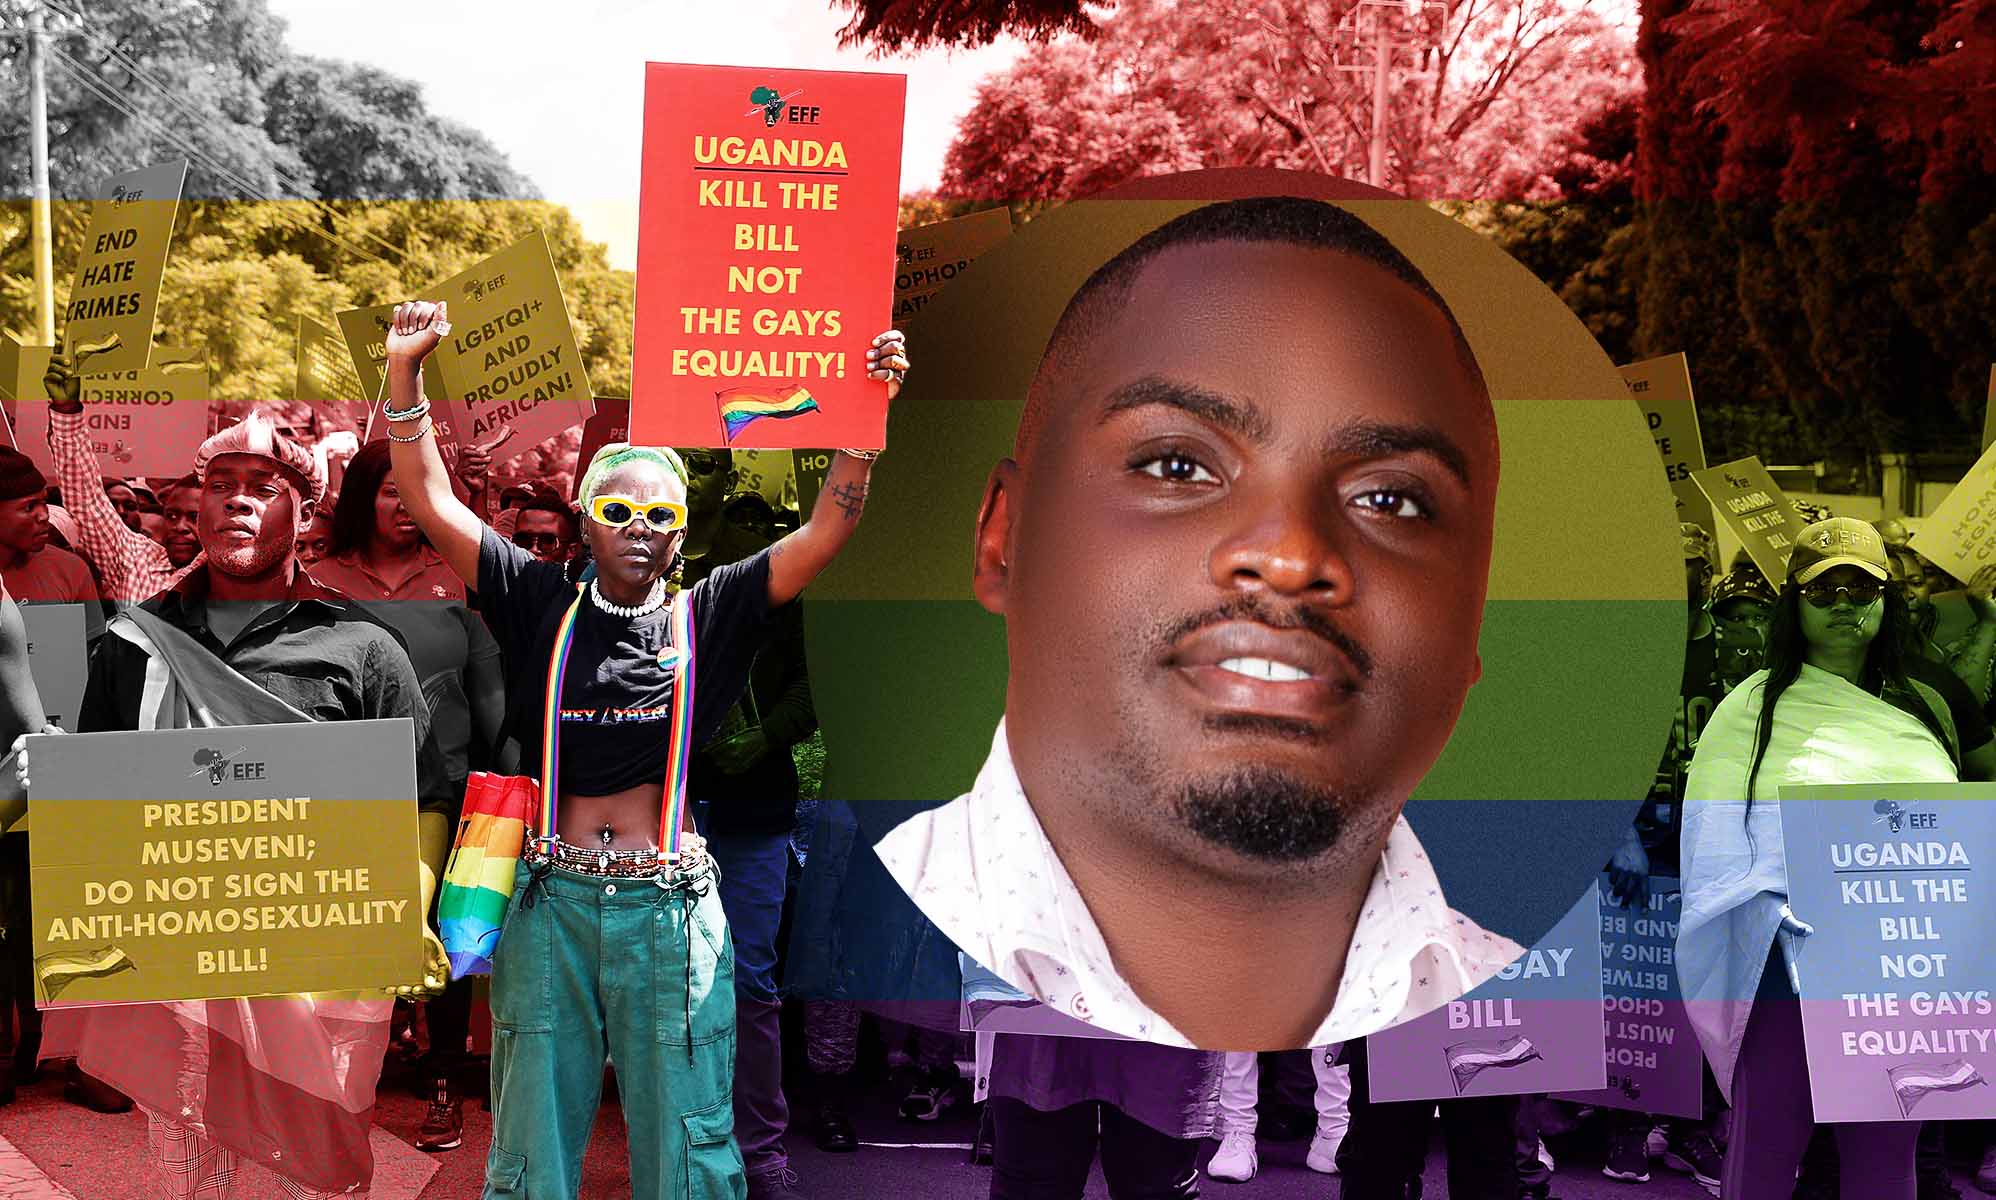 ¿Qué dejo atrás?": Ugandeses homosexuales que huyen de la ley contra la homosexualidad